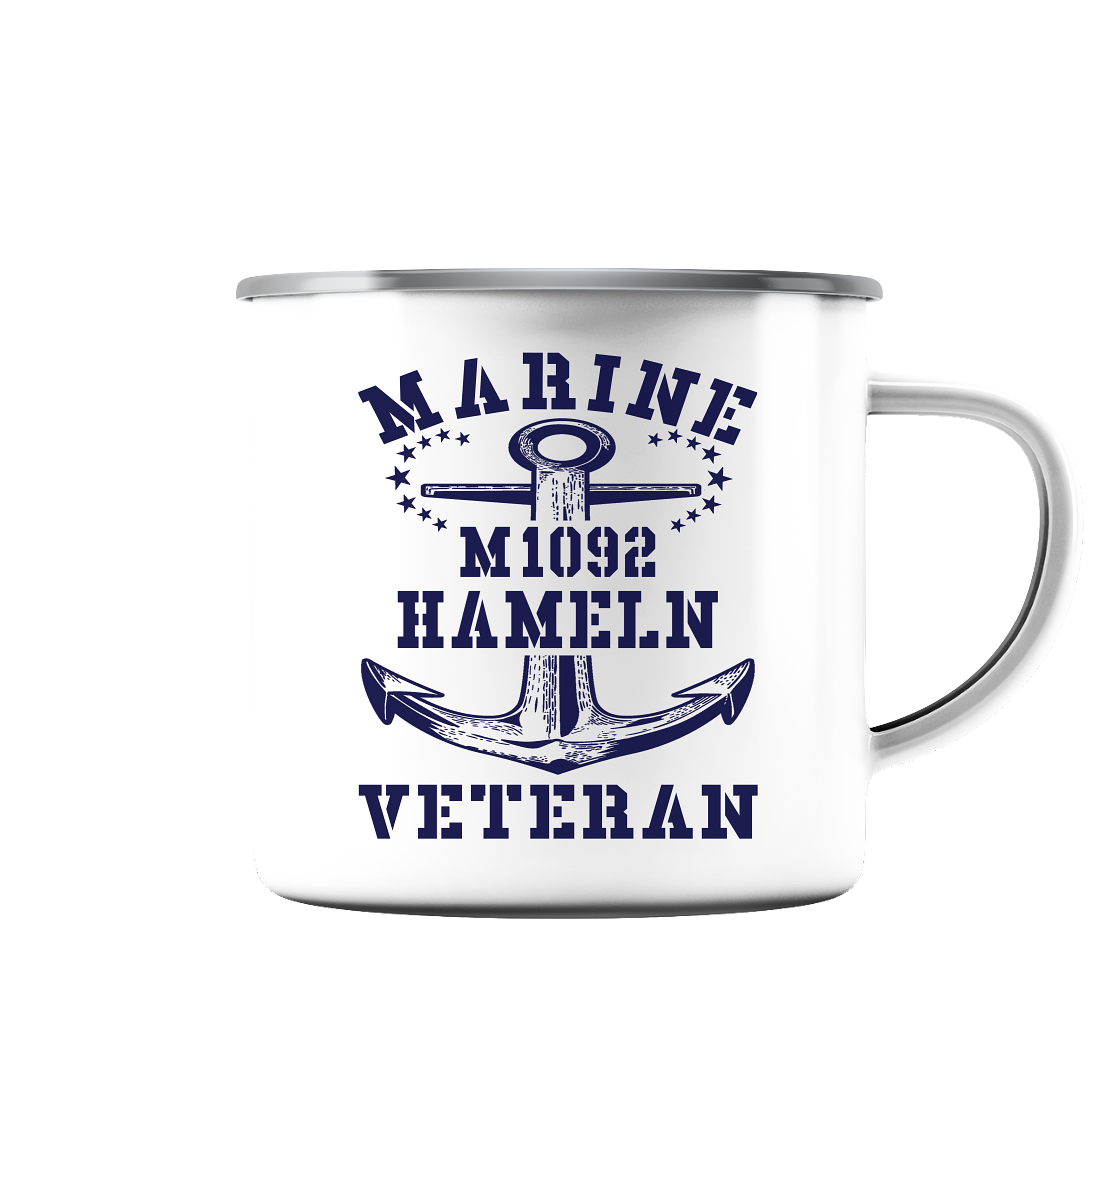 M1092 HAMELN Marine Veteran - Emaille Tasse (Silber)